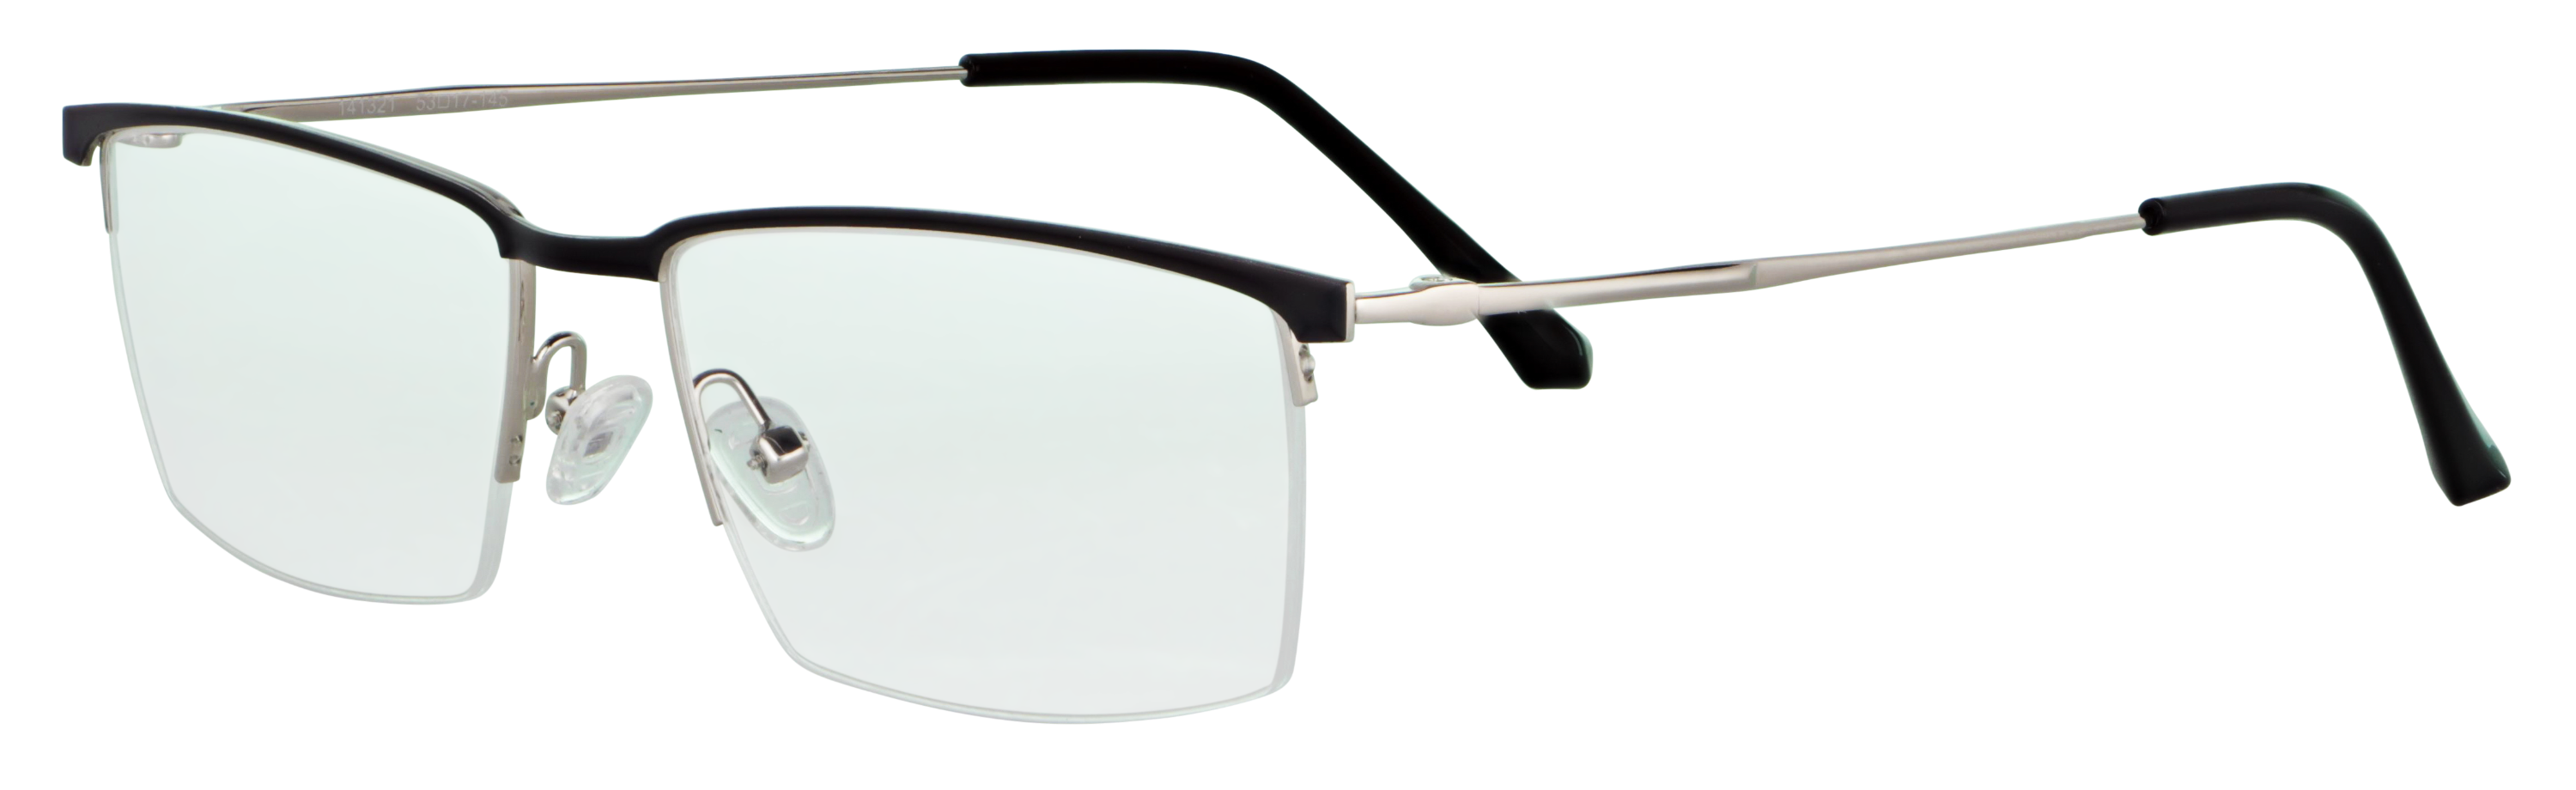 Das Bild zeigt die Korrektionsbrille 141321 von der Marke Abele Optik in schwarz / silber.